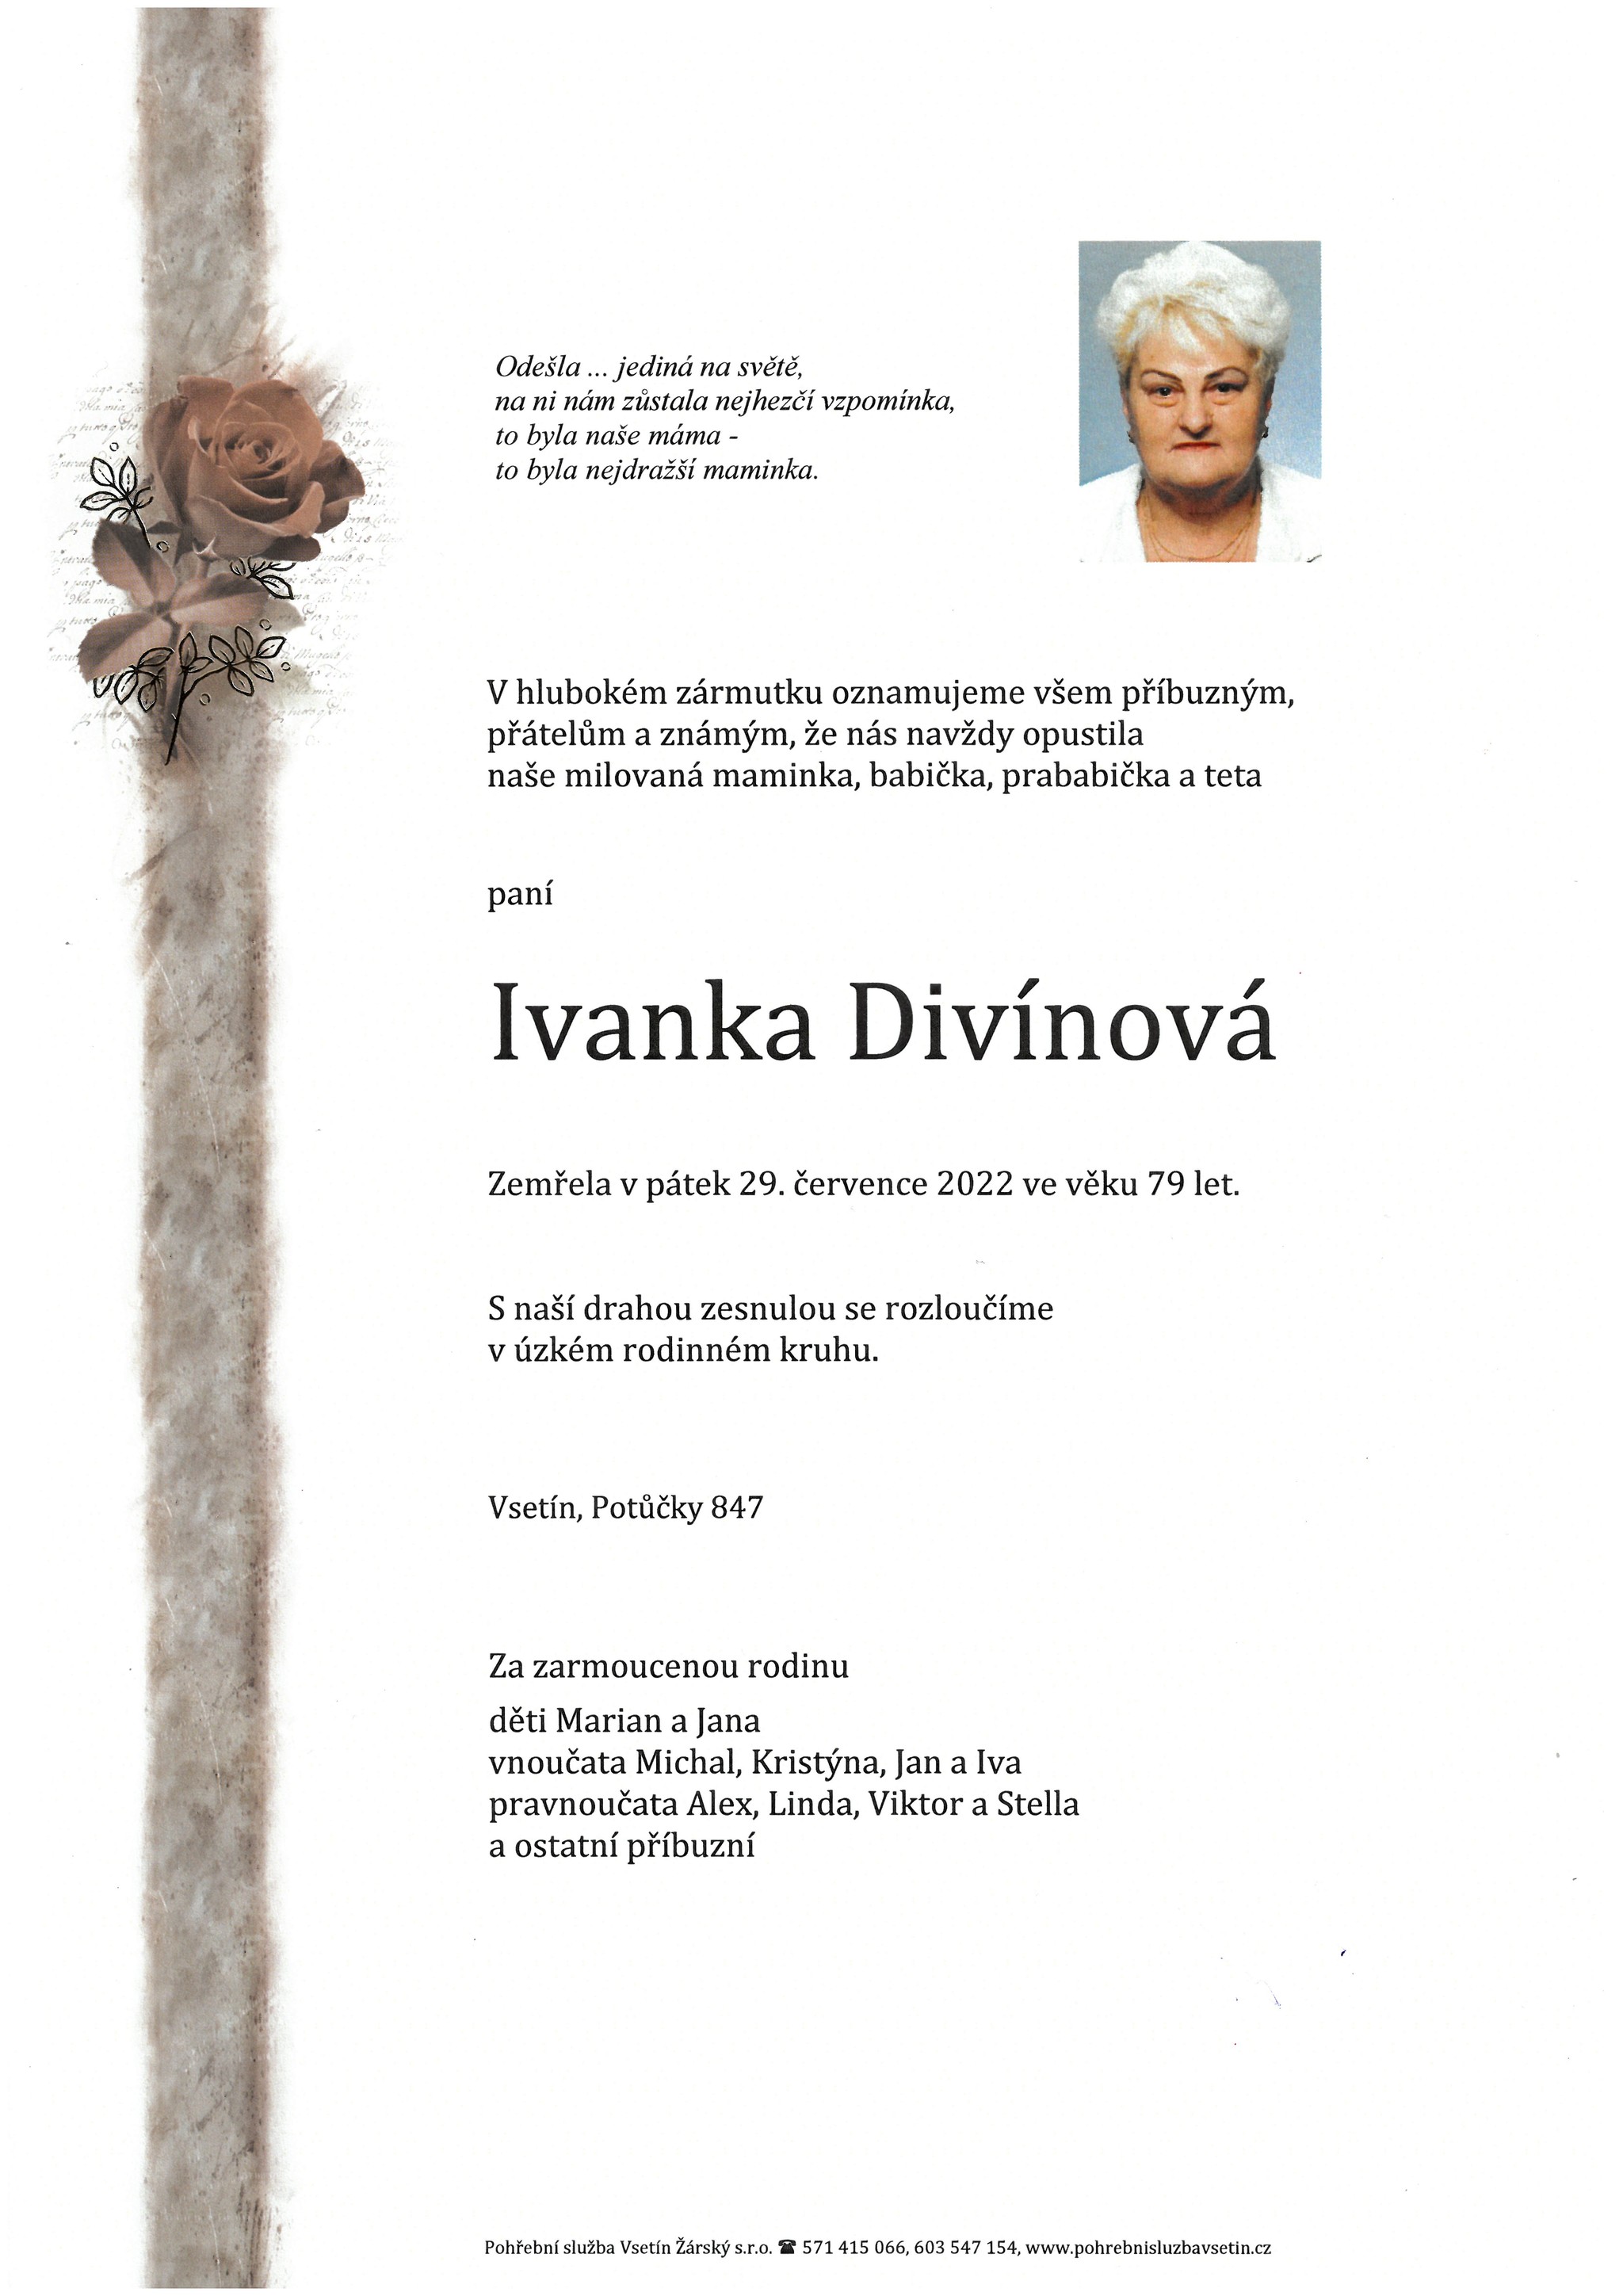 Ivanka Divínová